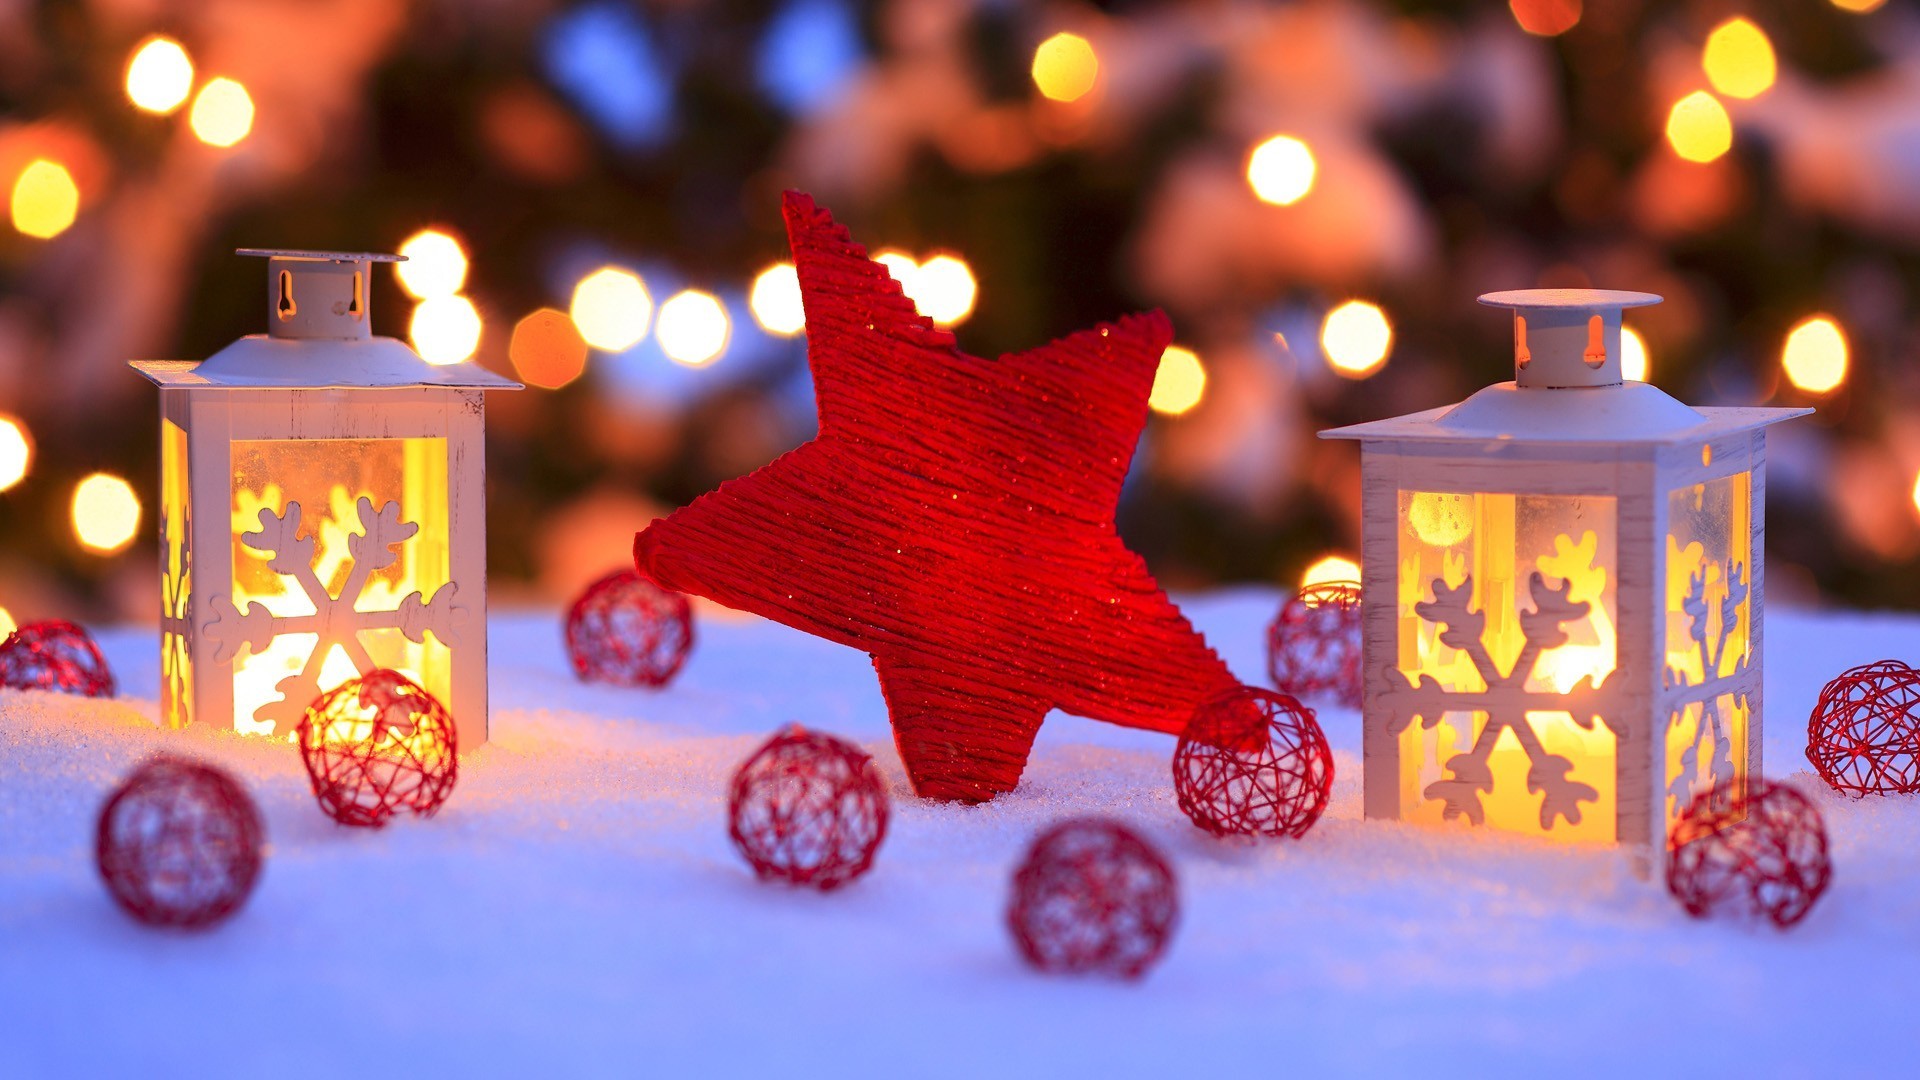 Khám phá những hình nền Giáng sinh miễn phí đẹp nhất để trang trí Desktop của bạn. Click vào ảnh và cùng nhau tận hưởng không khí lễ hội và đón một mùa Giáng sinh đầy ý nghĩa.